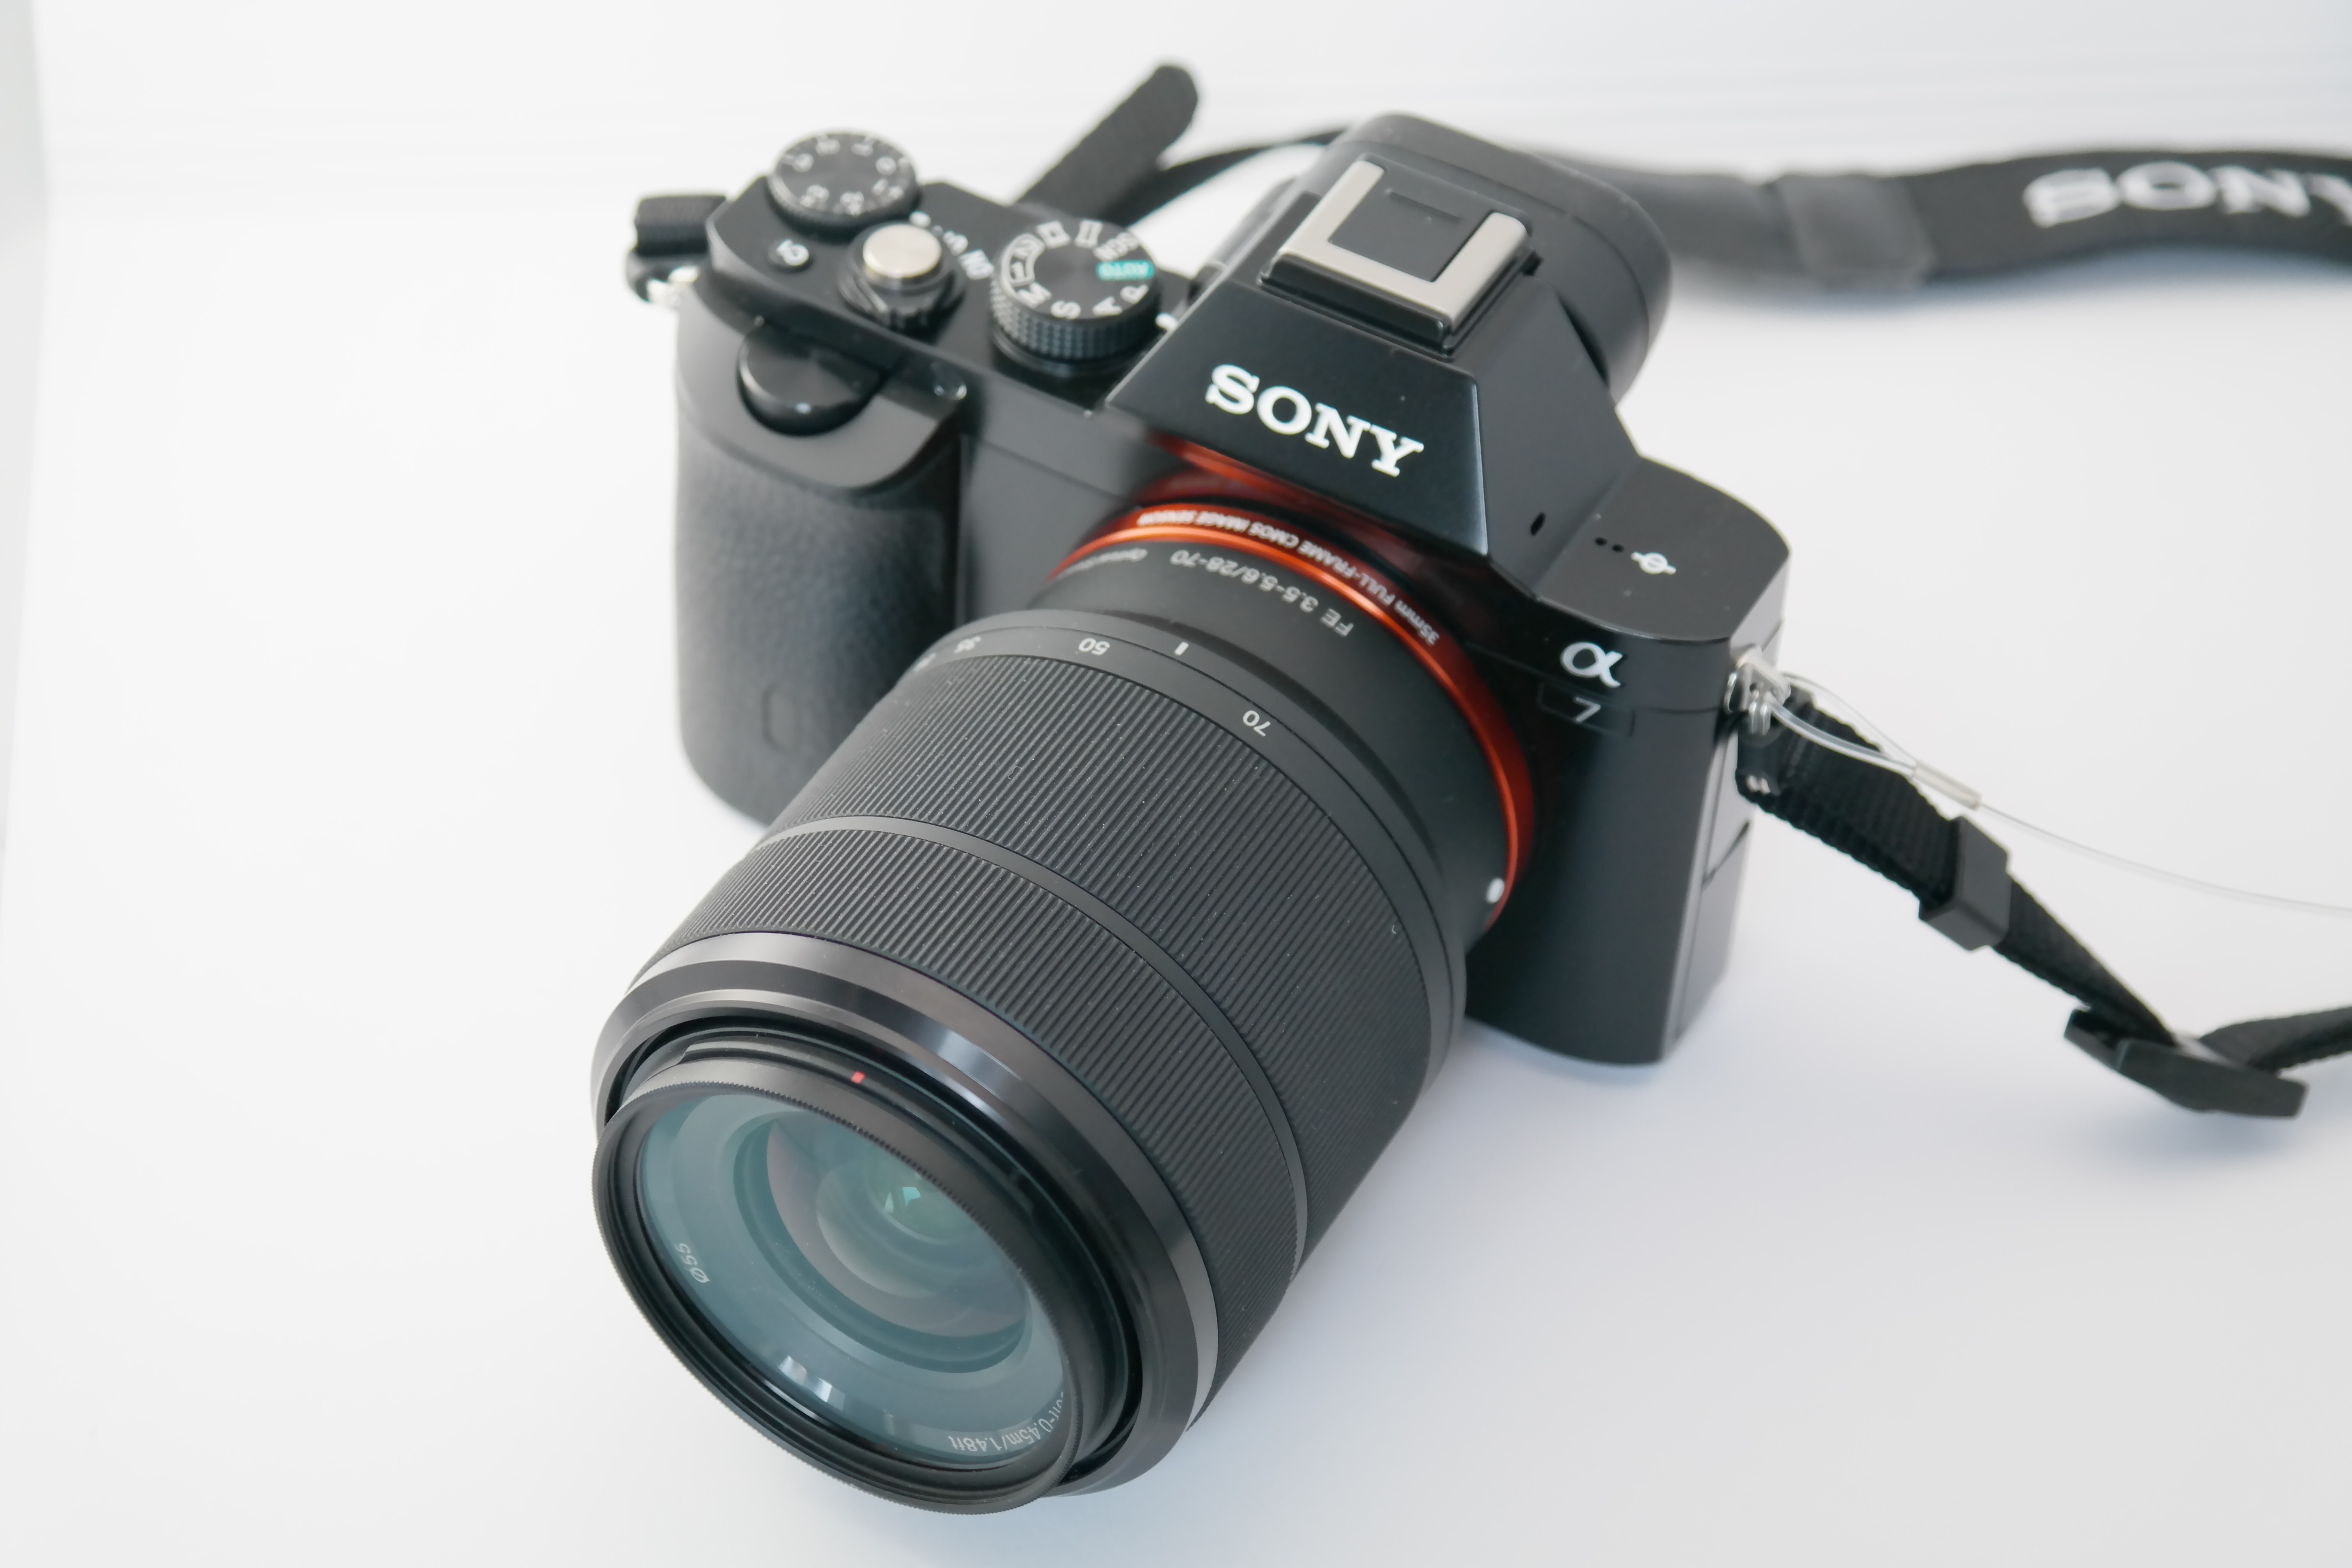 Sony Alpha 7, Camera, Photo Camera, Sony, photography themes, camera - photographic equipment